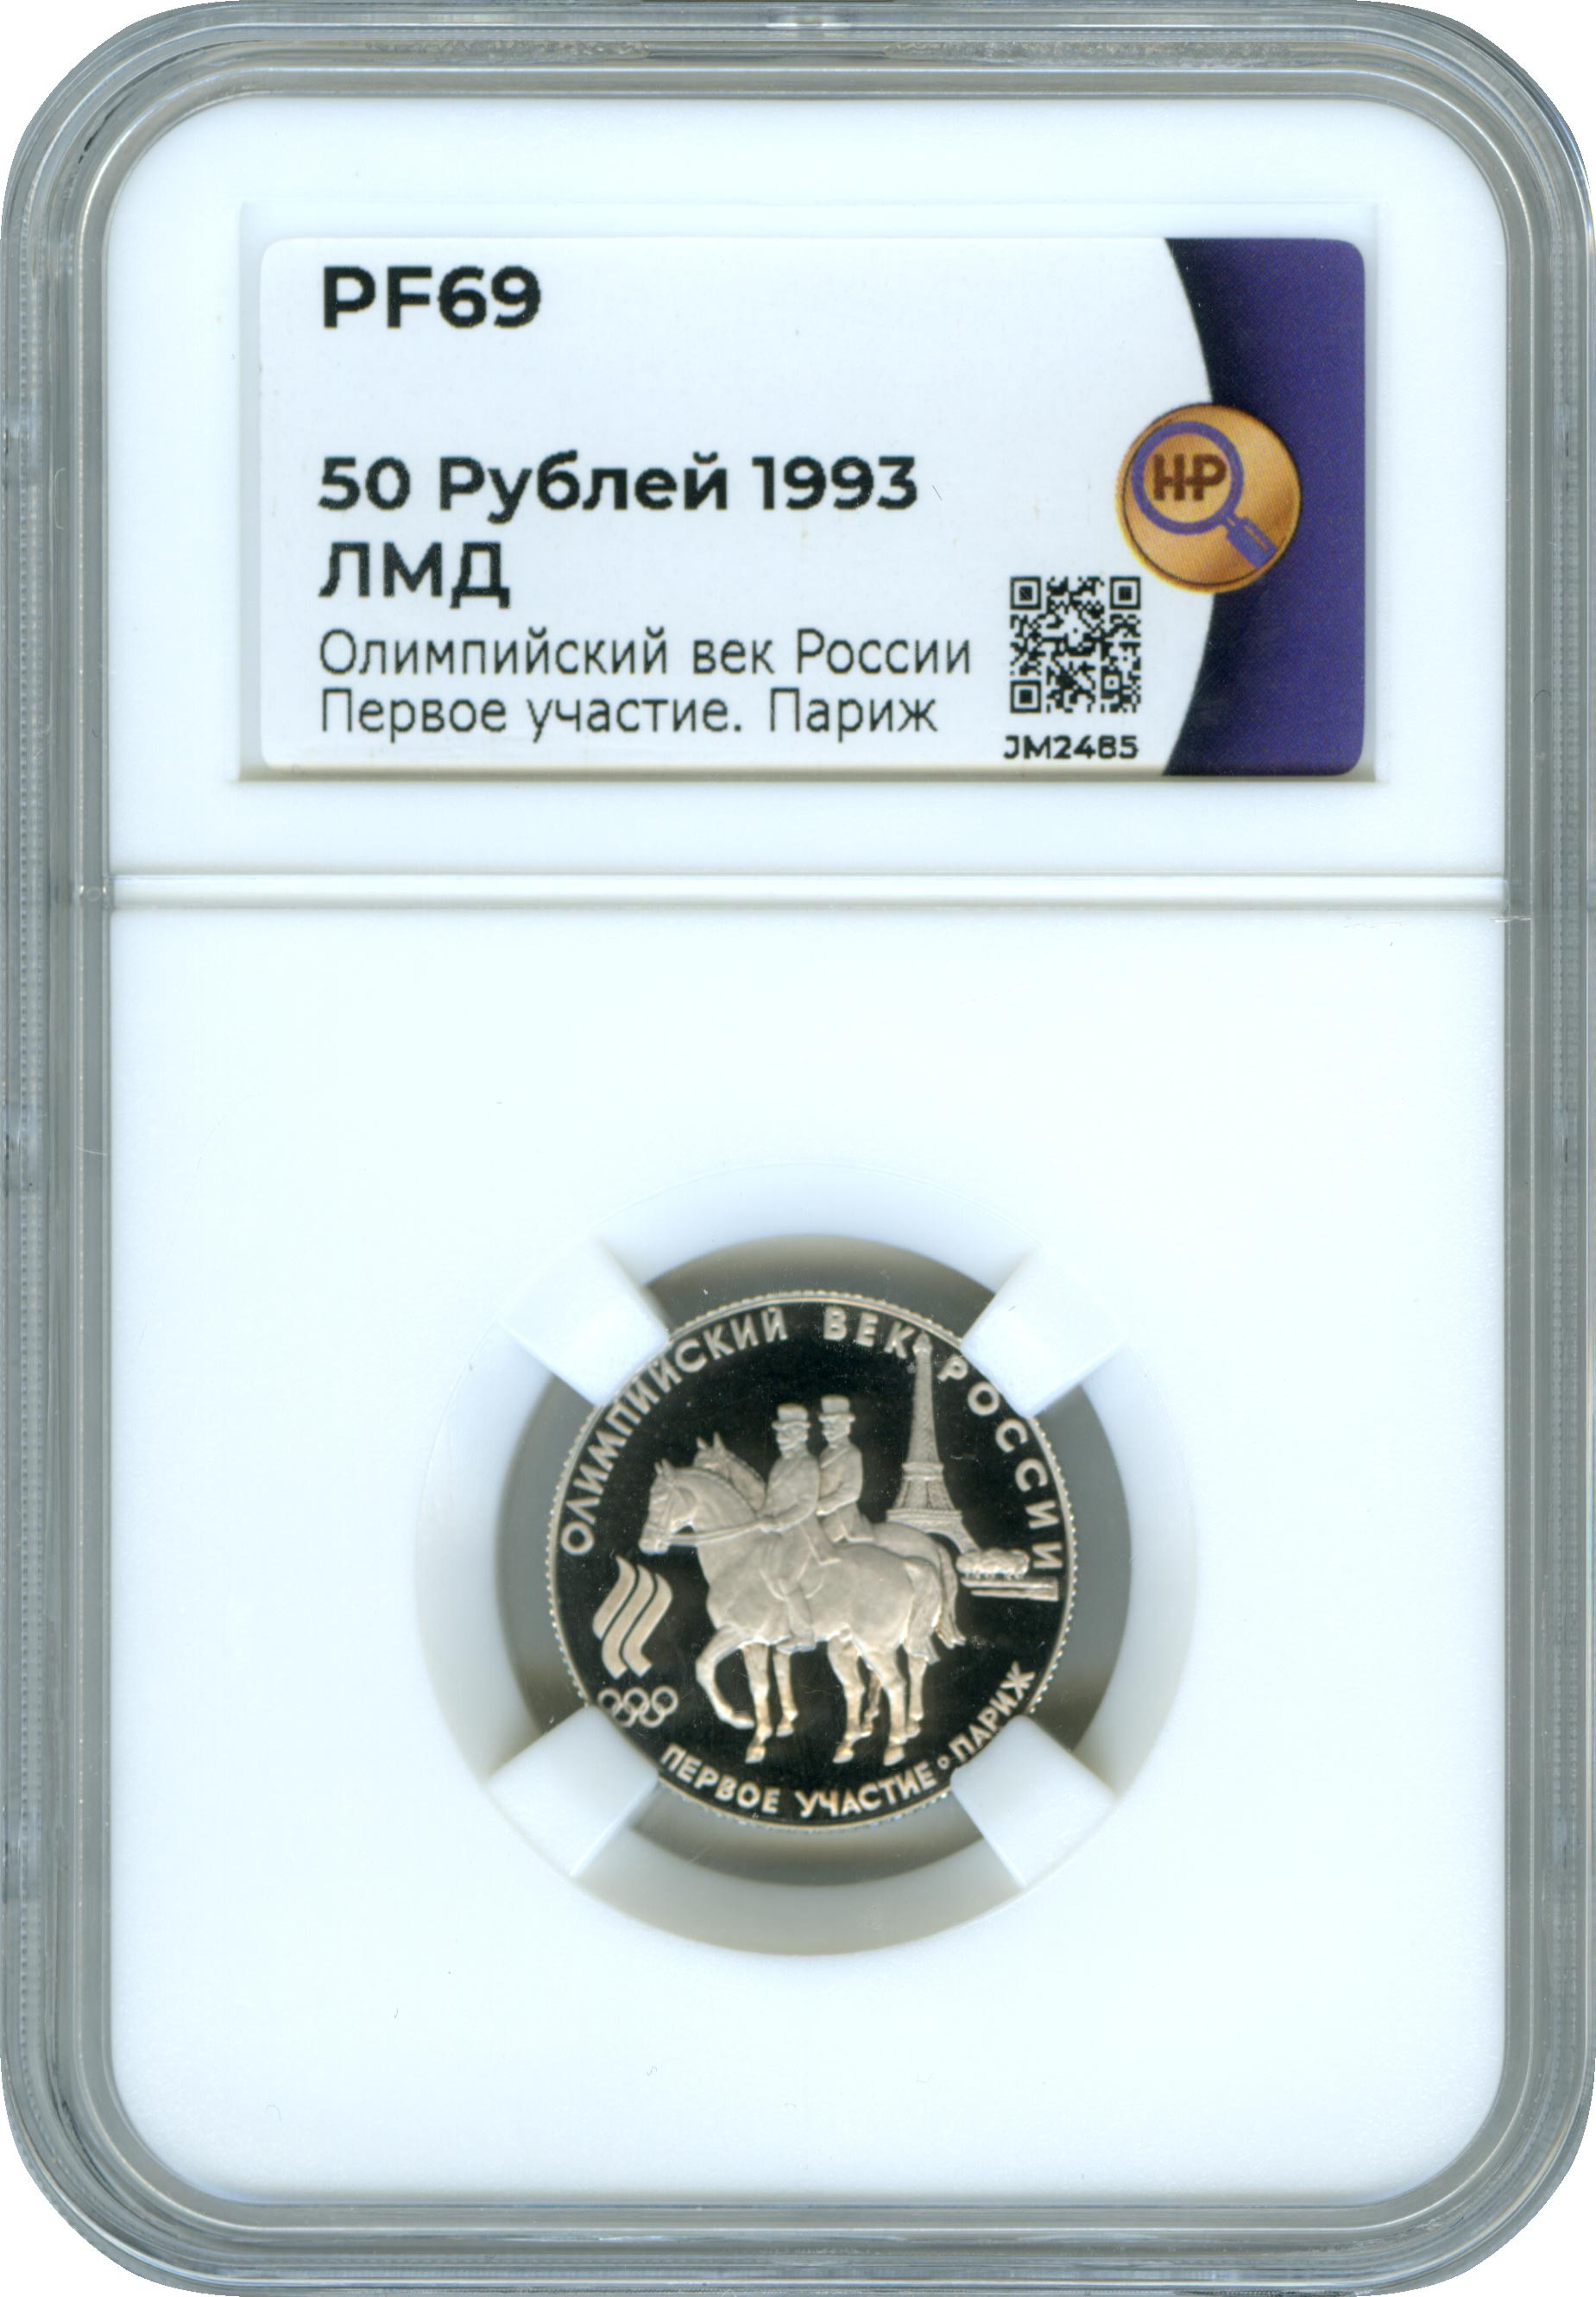 50 рублей 1993 года ЛМД Олимпийский век России - Первое участие Париж